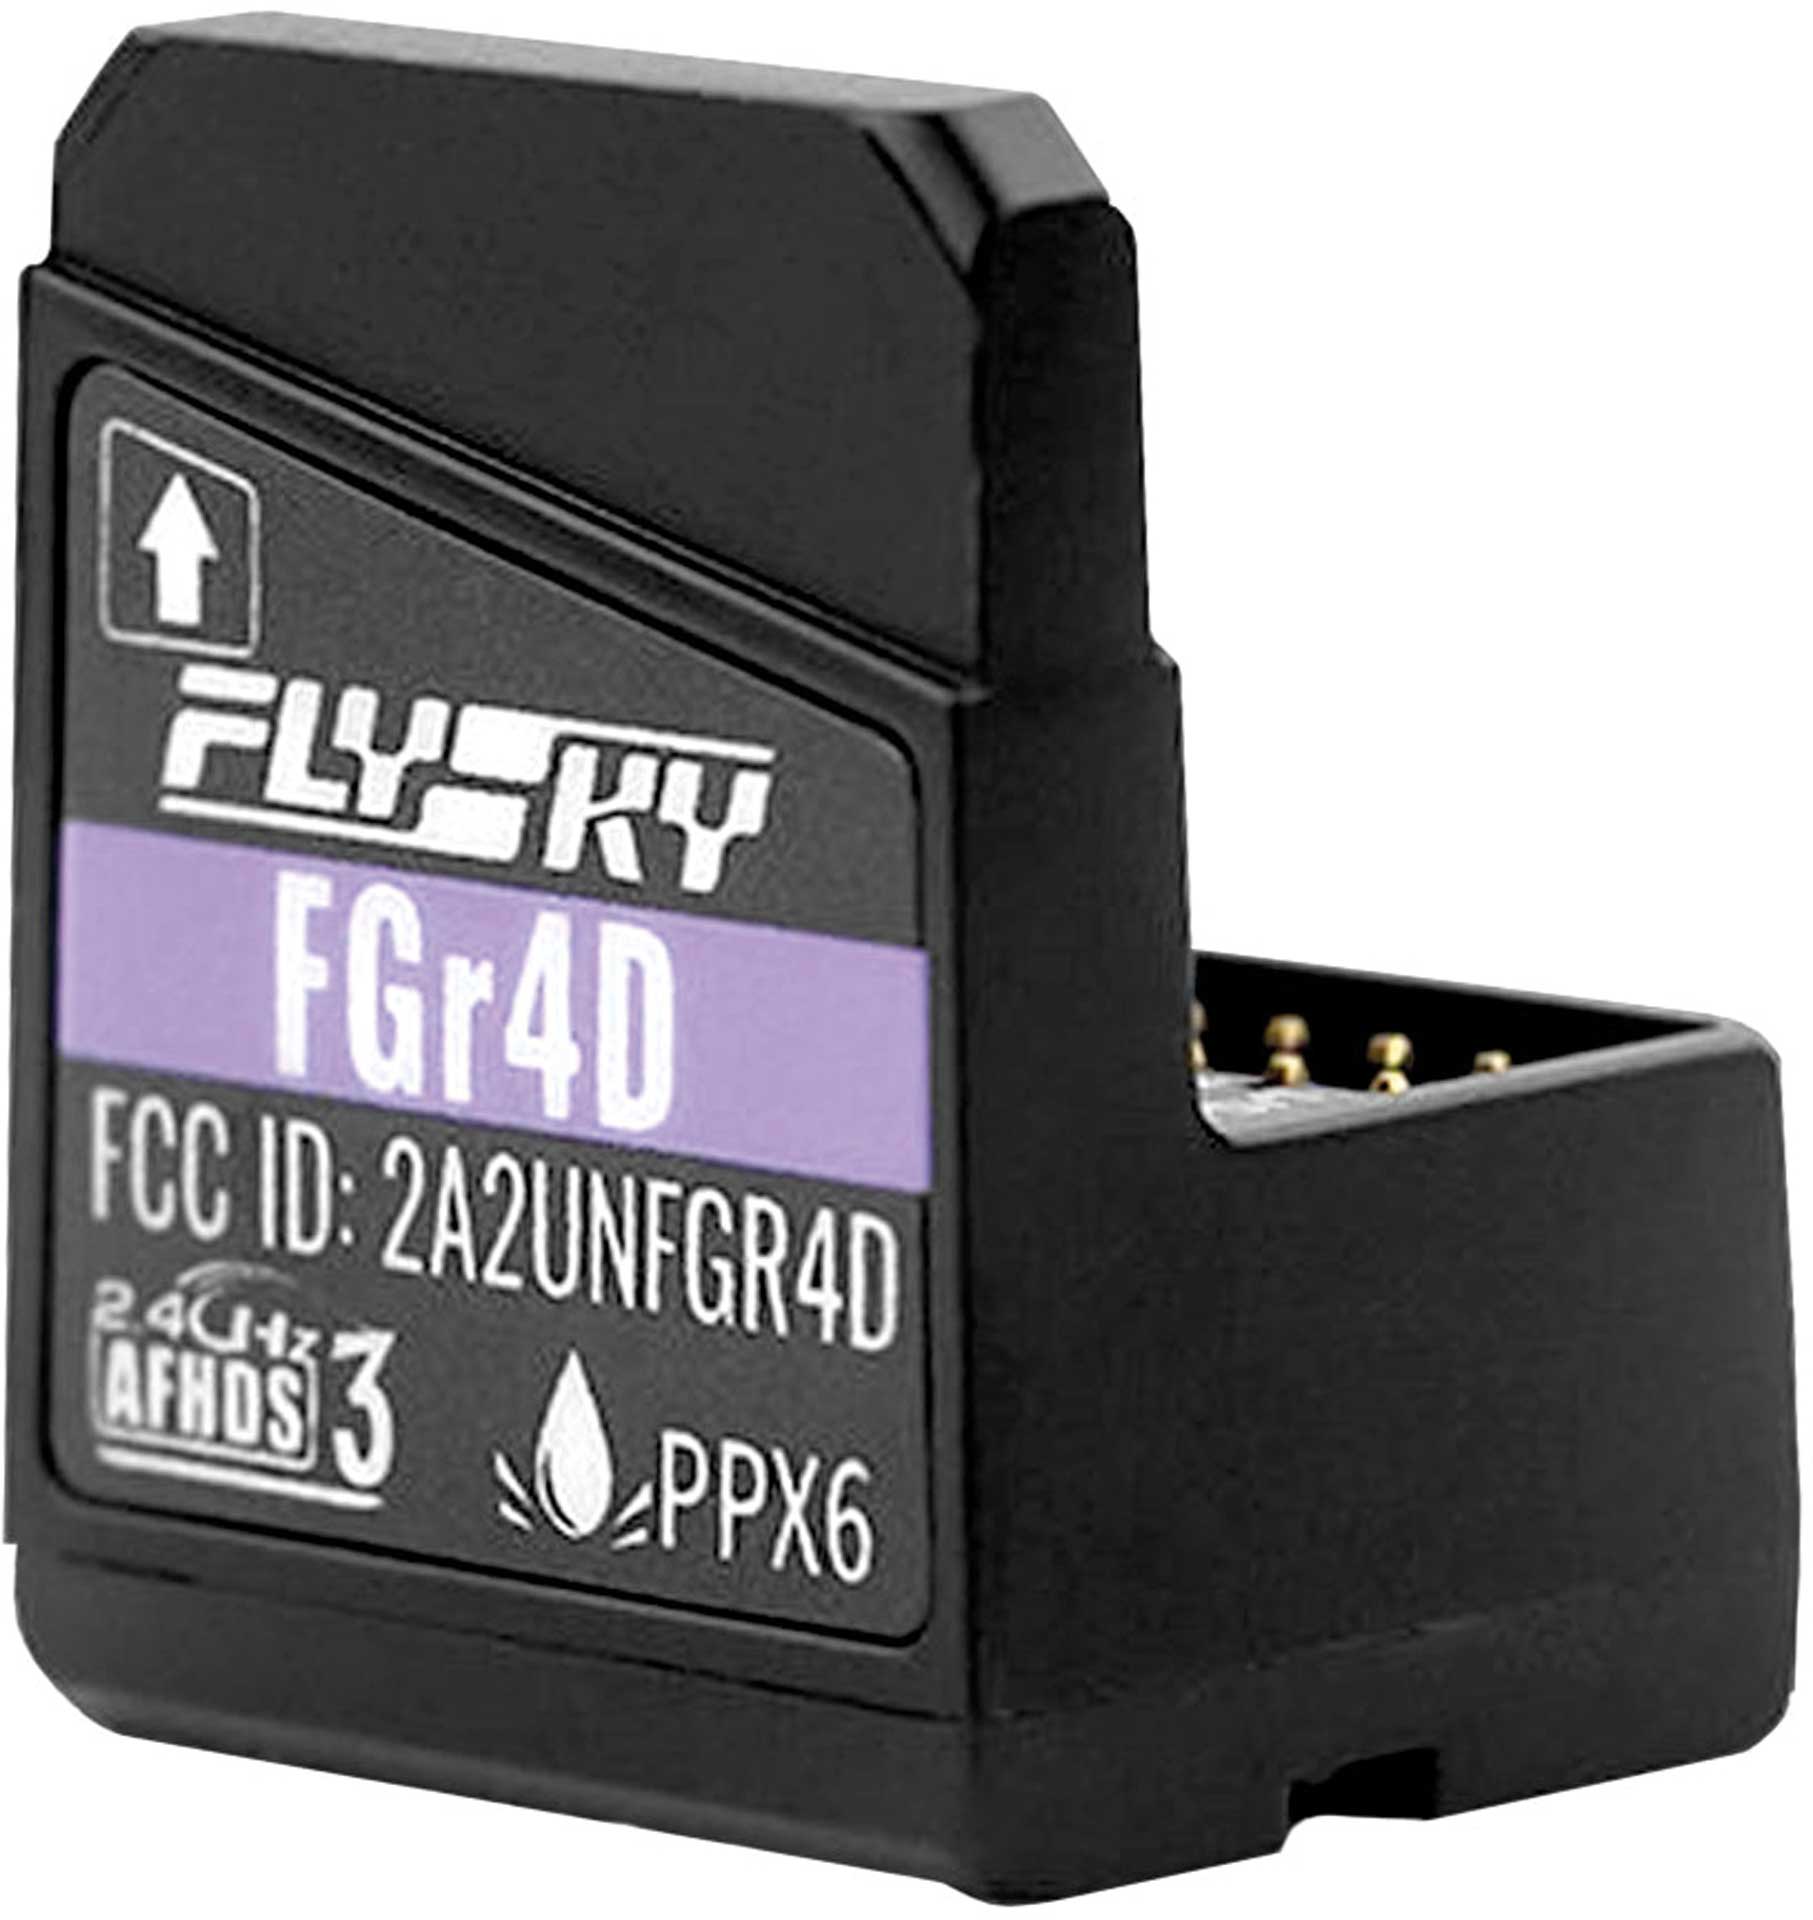 Flysky FGr4D AFHDS3 receiver 4 channel